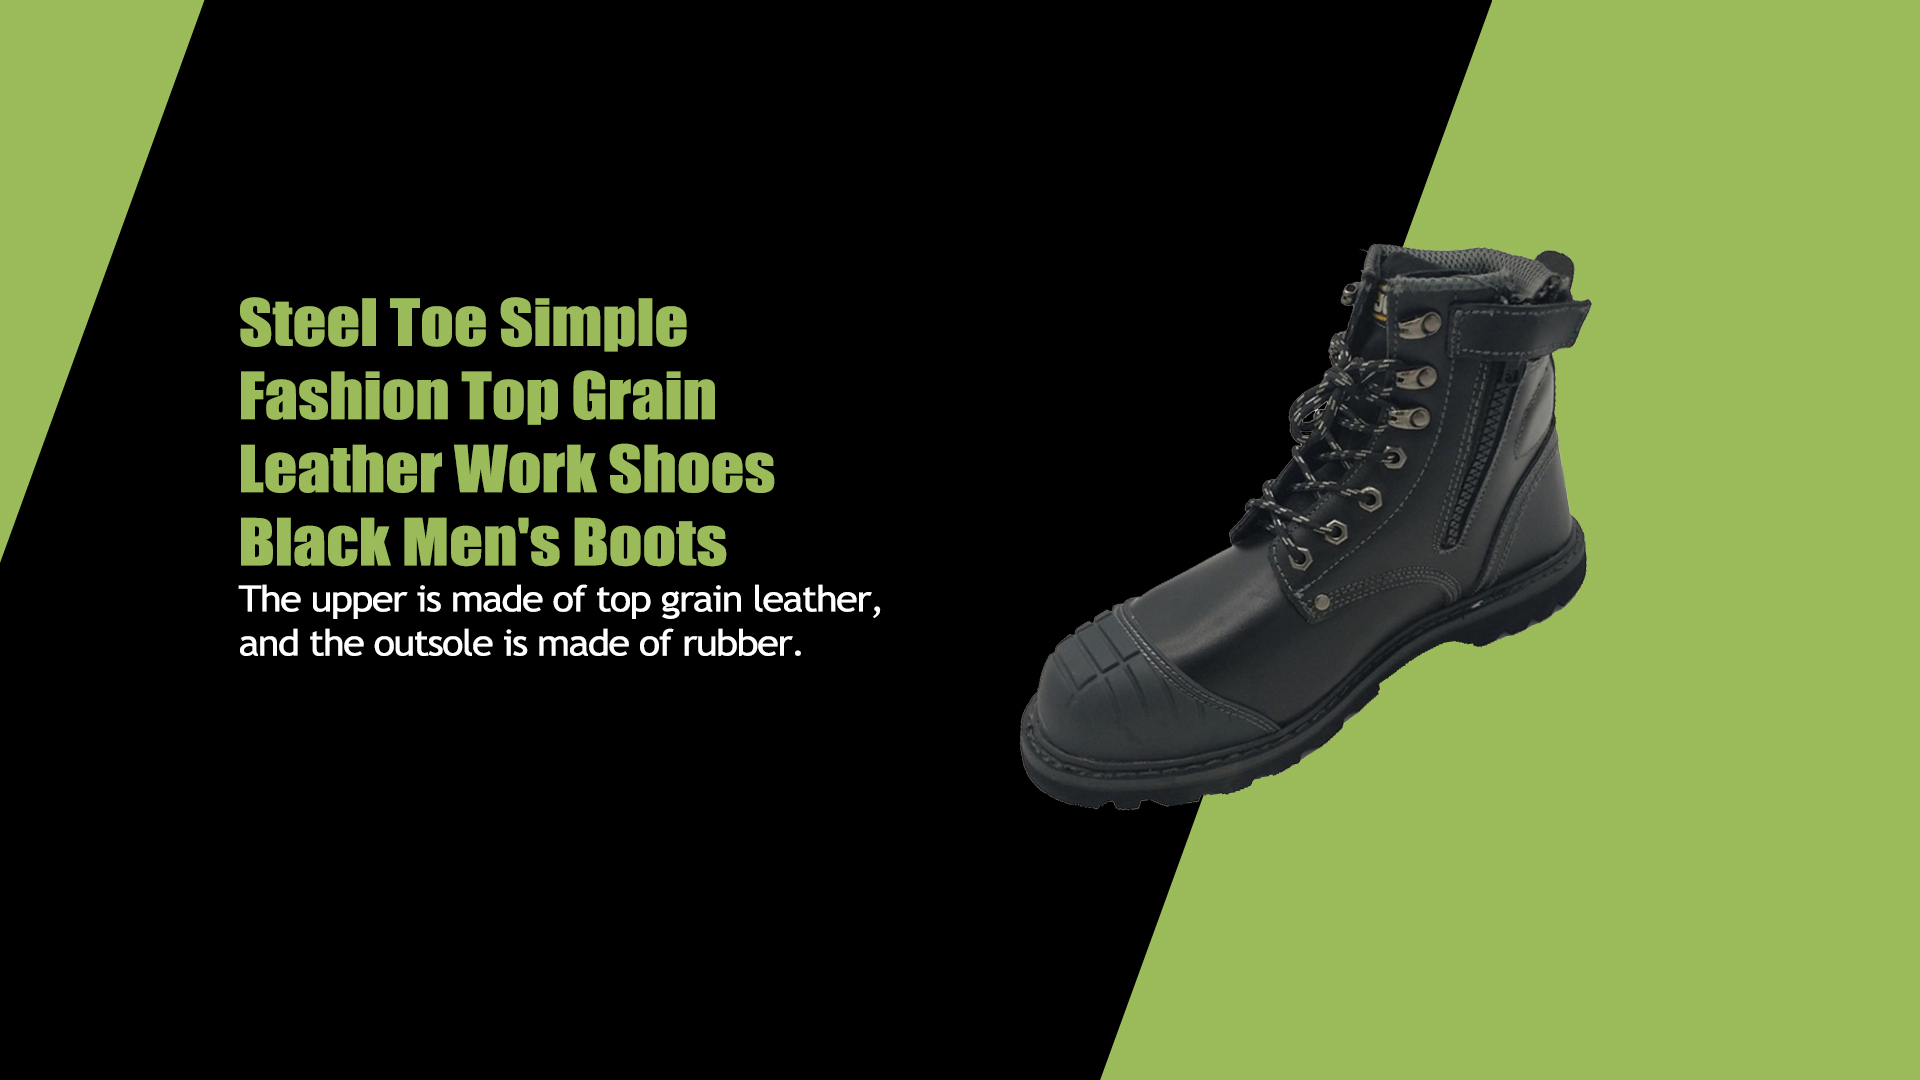 اسٹیل پیر سادہ فیشن ٹاپ گرین لیدر ورک شوز سیاہ مردوں کے جوتے